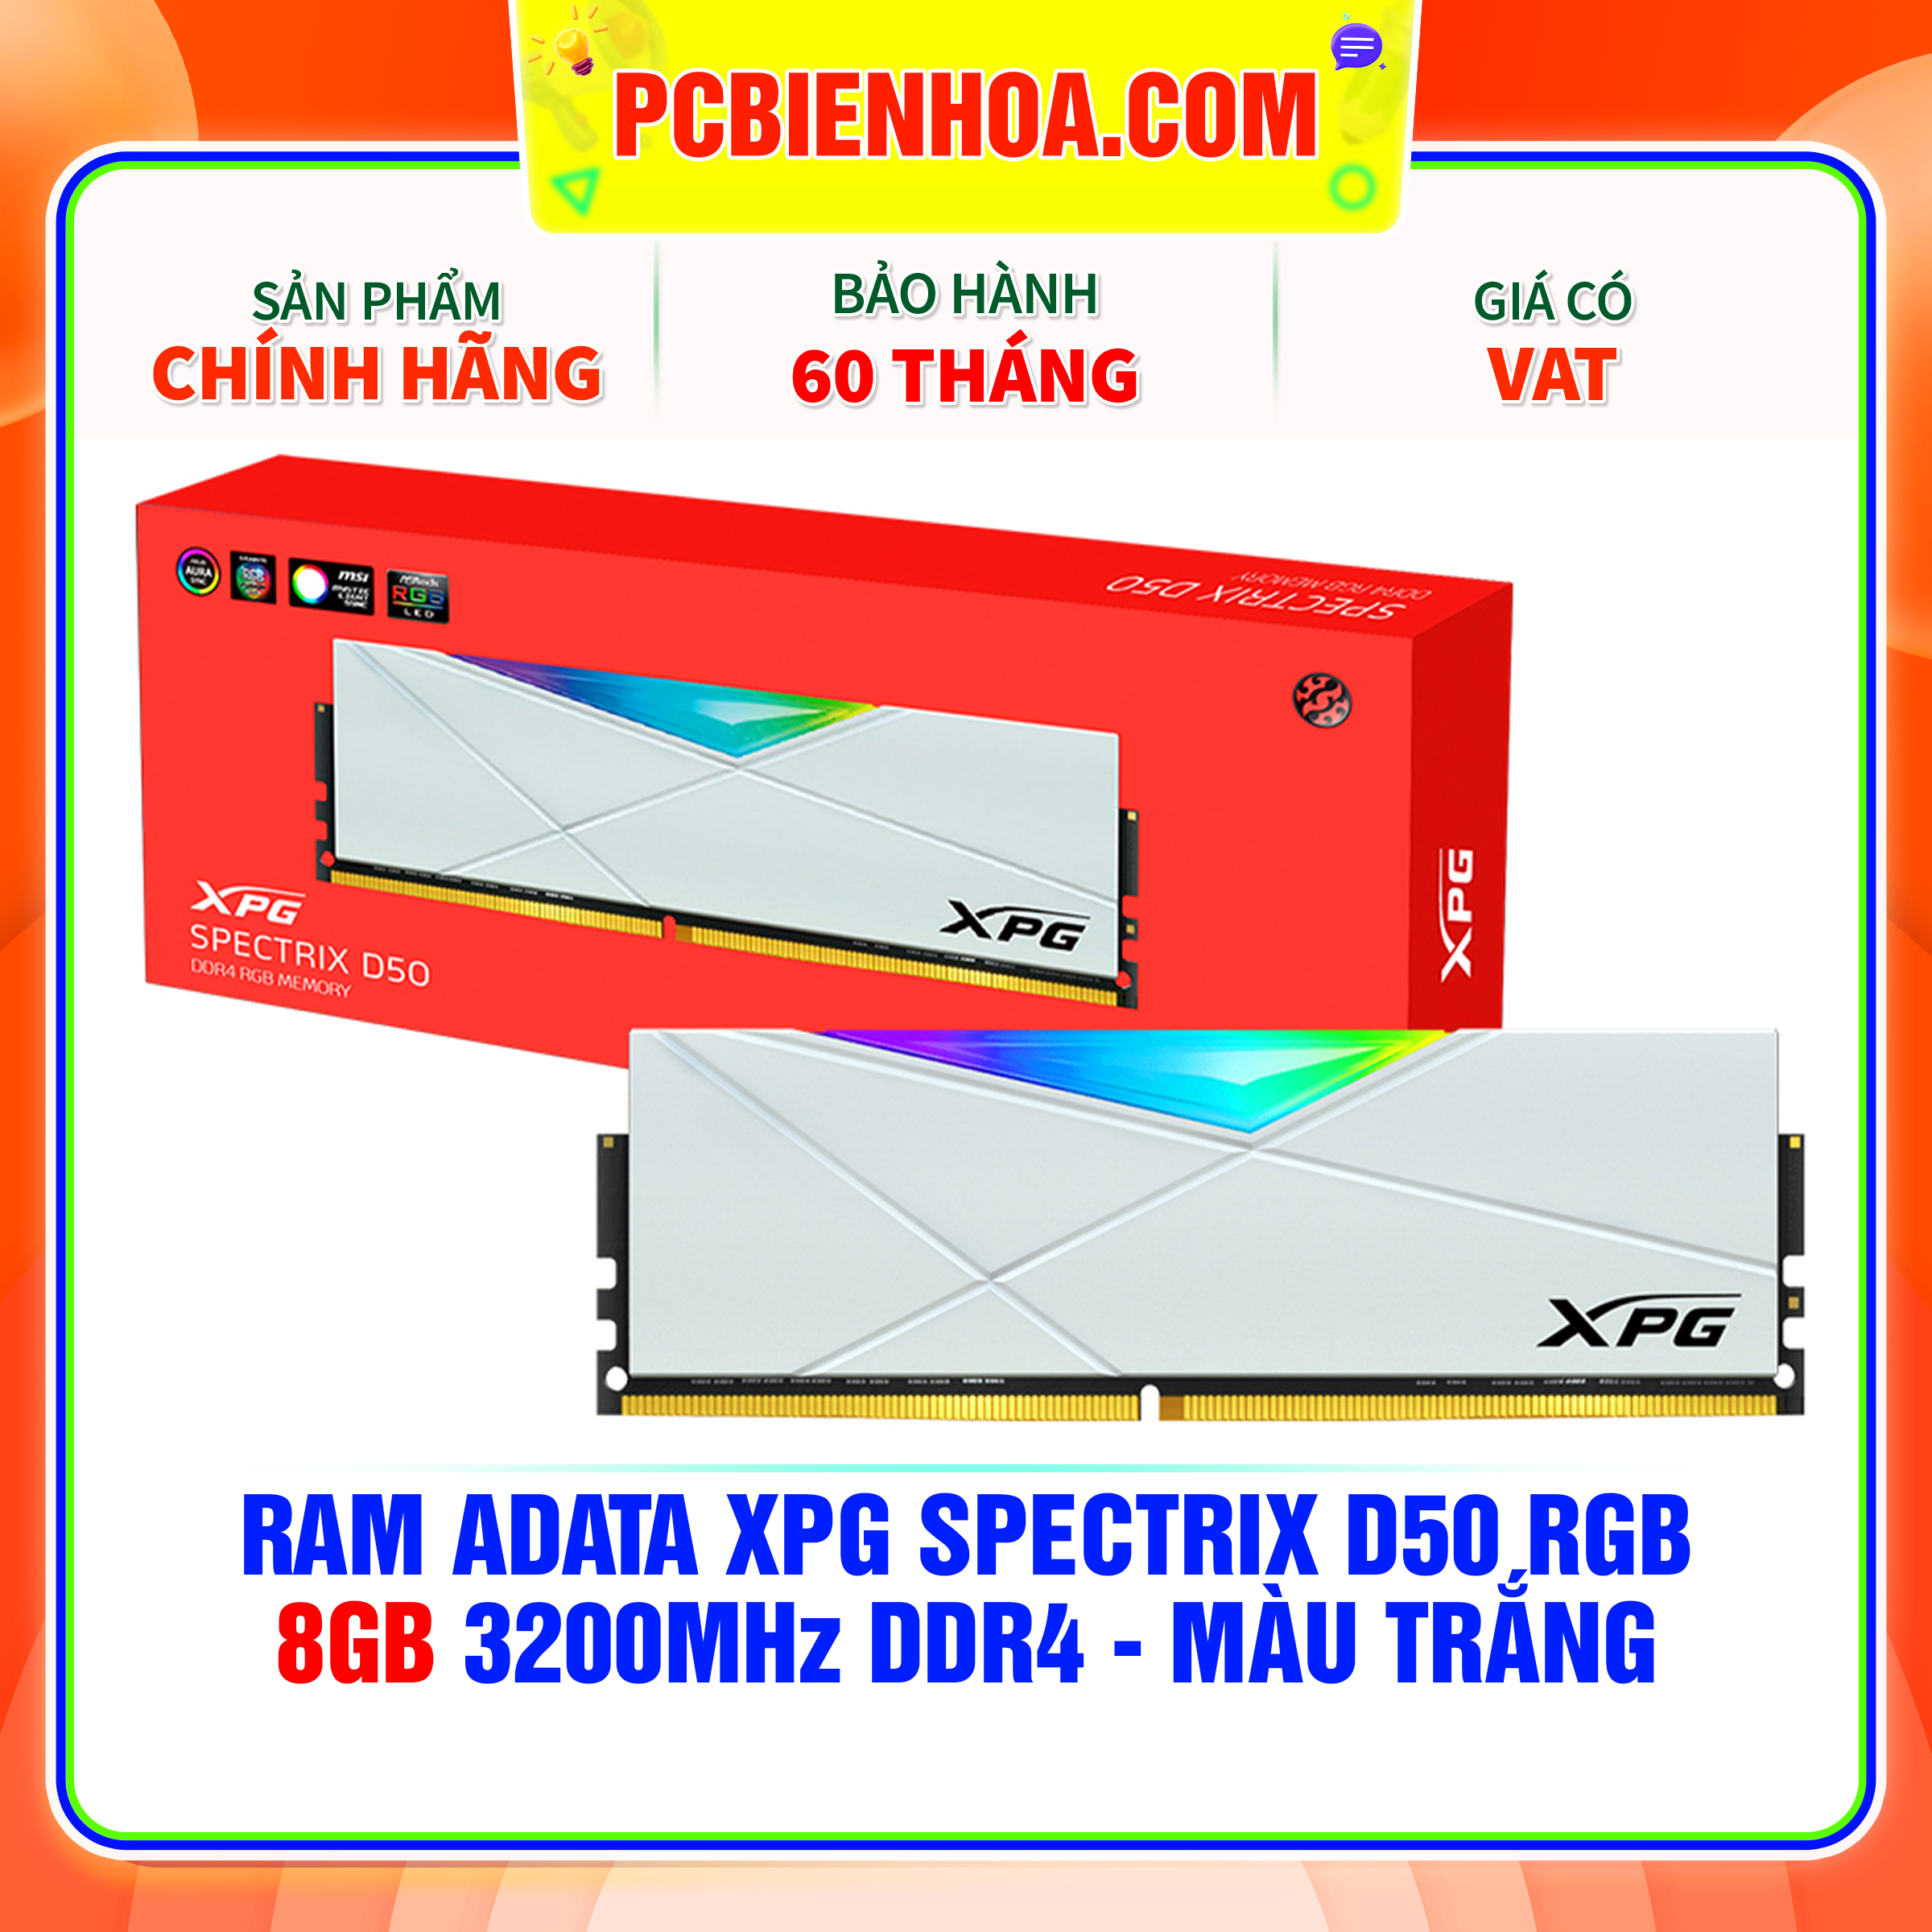 RAM ADATA XPG SPECTRIX D50 RGB - 8GB 3200MHZ DDR4 - MÀU TRẮNG